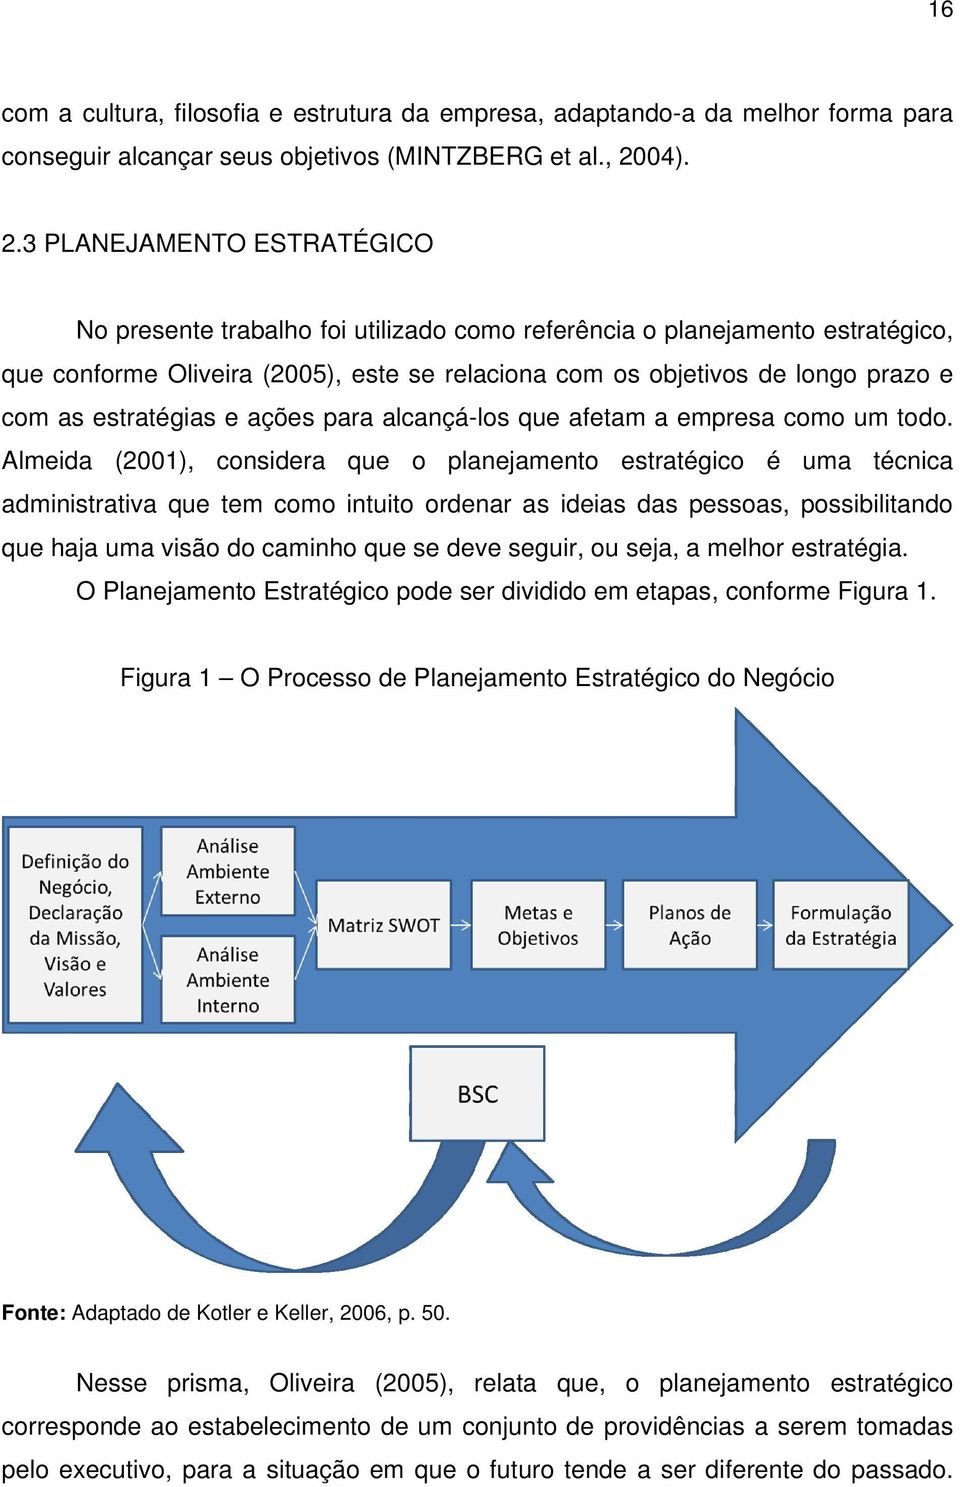 3 PLANEJAMENTO ESTRATÉGICO No presente trabalho foi utilizado como referência o planejamento estratégico, que conforme Oliveira (2005), este se relaciona com os objetivos de longo prazo e com as